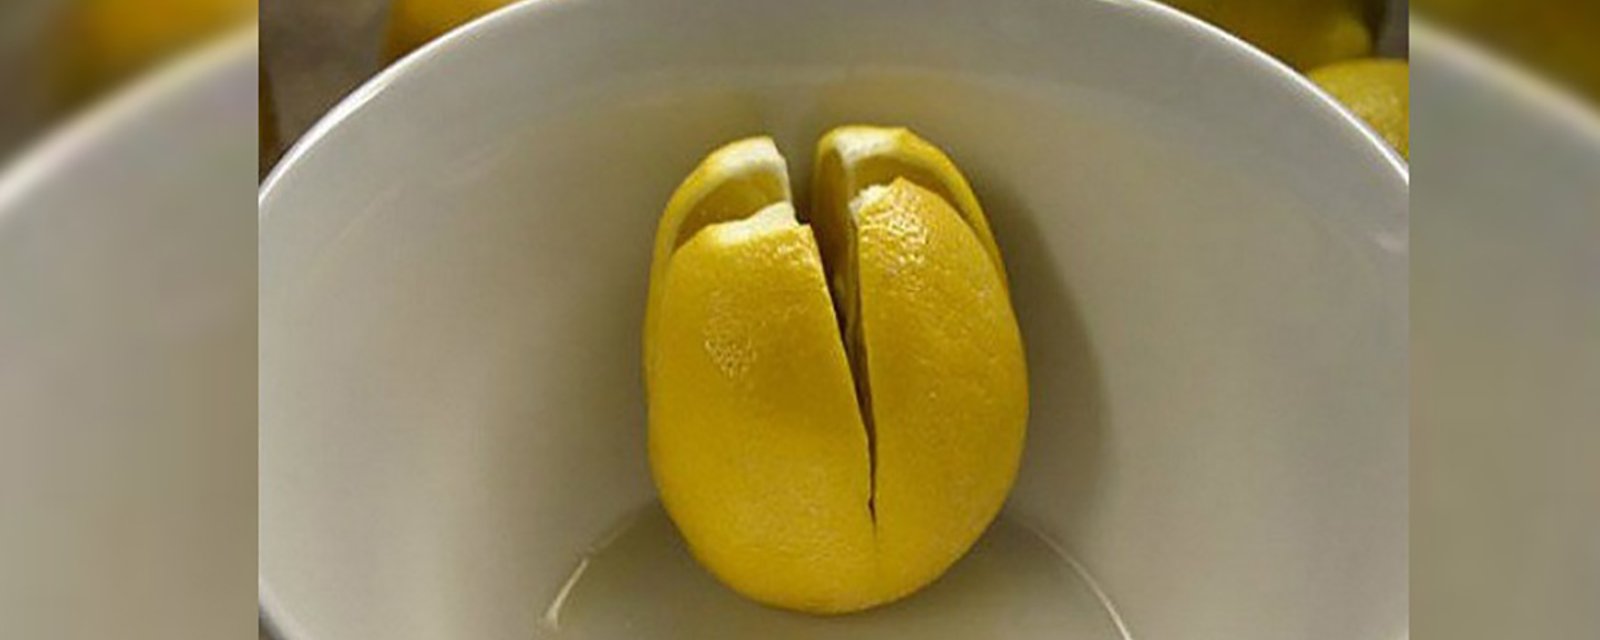 Voici pourquoi vous devriez toujours avoir du citron frais près de votre lit!